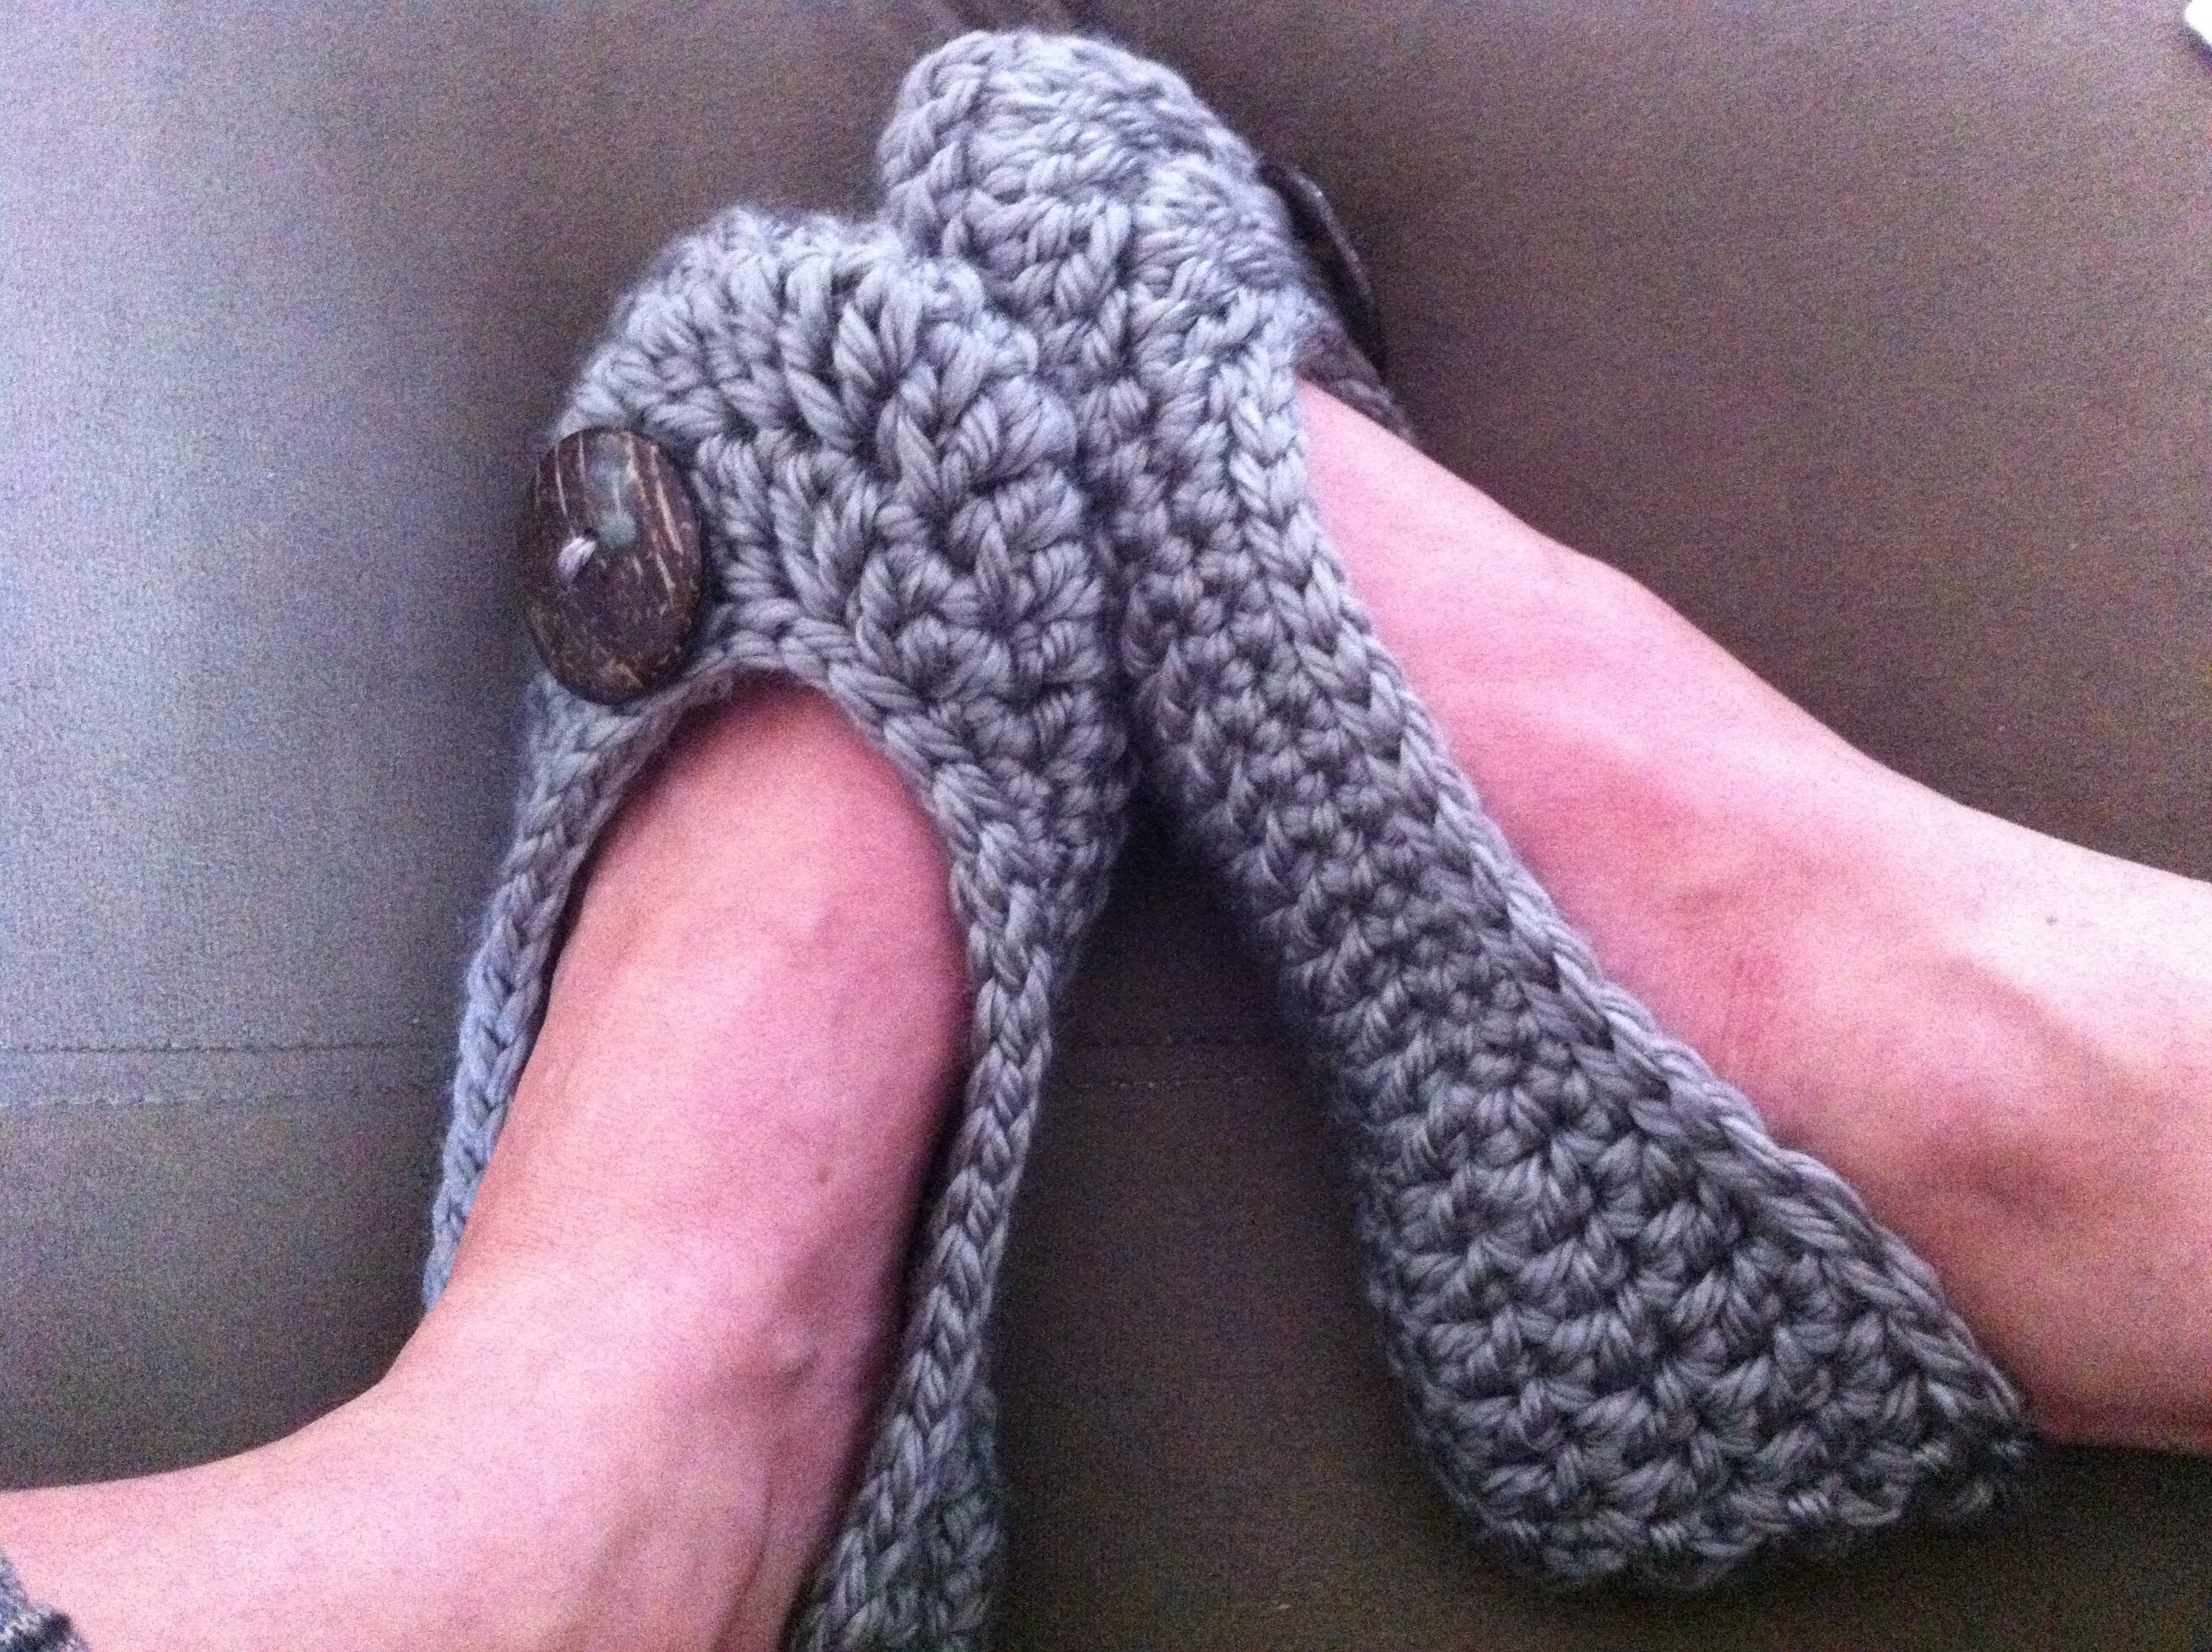 Sapatilhas de crochê são super cool (Foto: Reprodução)